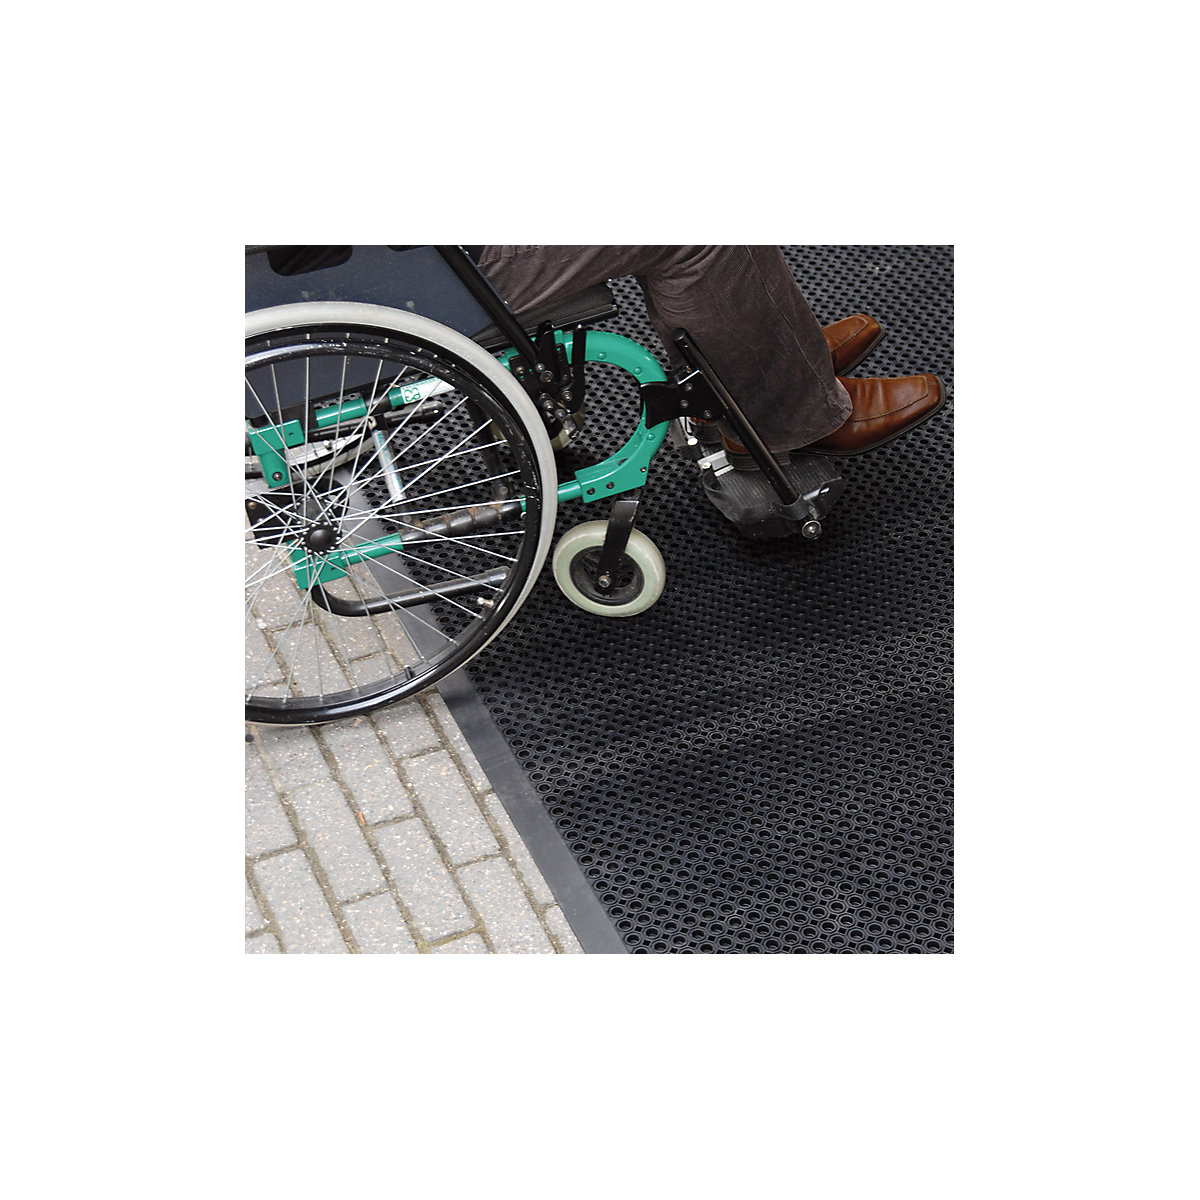 Mata wychwytująca brud, nadająca się do przejeżdżania wózkiem inwalidzkim – NOTRAX (Zdjęcie produktu 10)-9